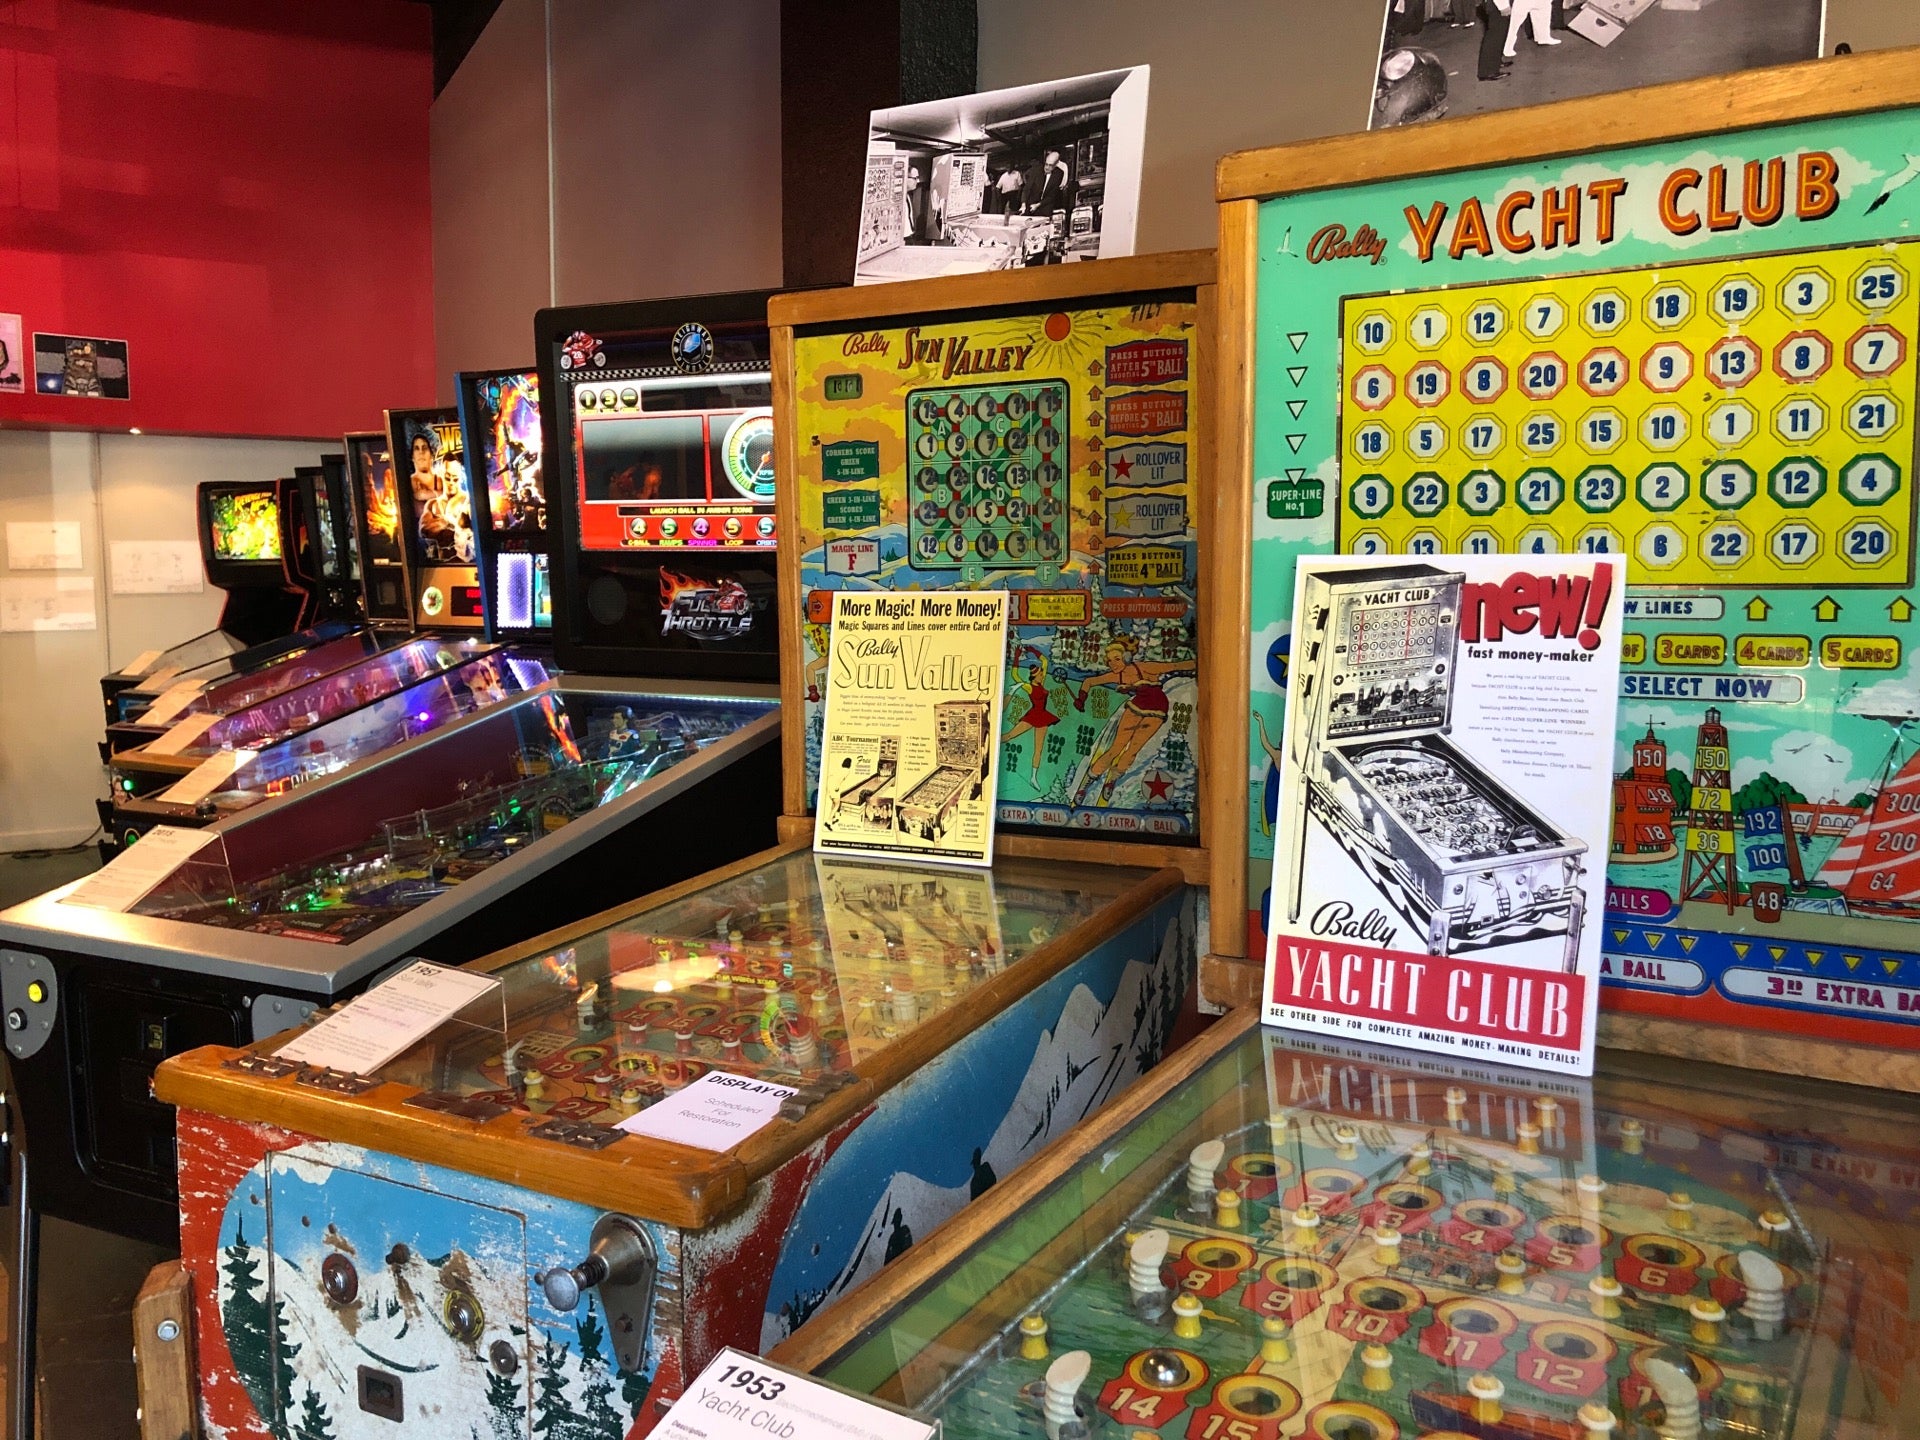 Chattanooga Pinball Museum – Pinball Museum & Classic Arcade